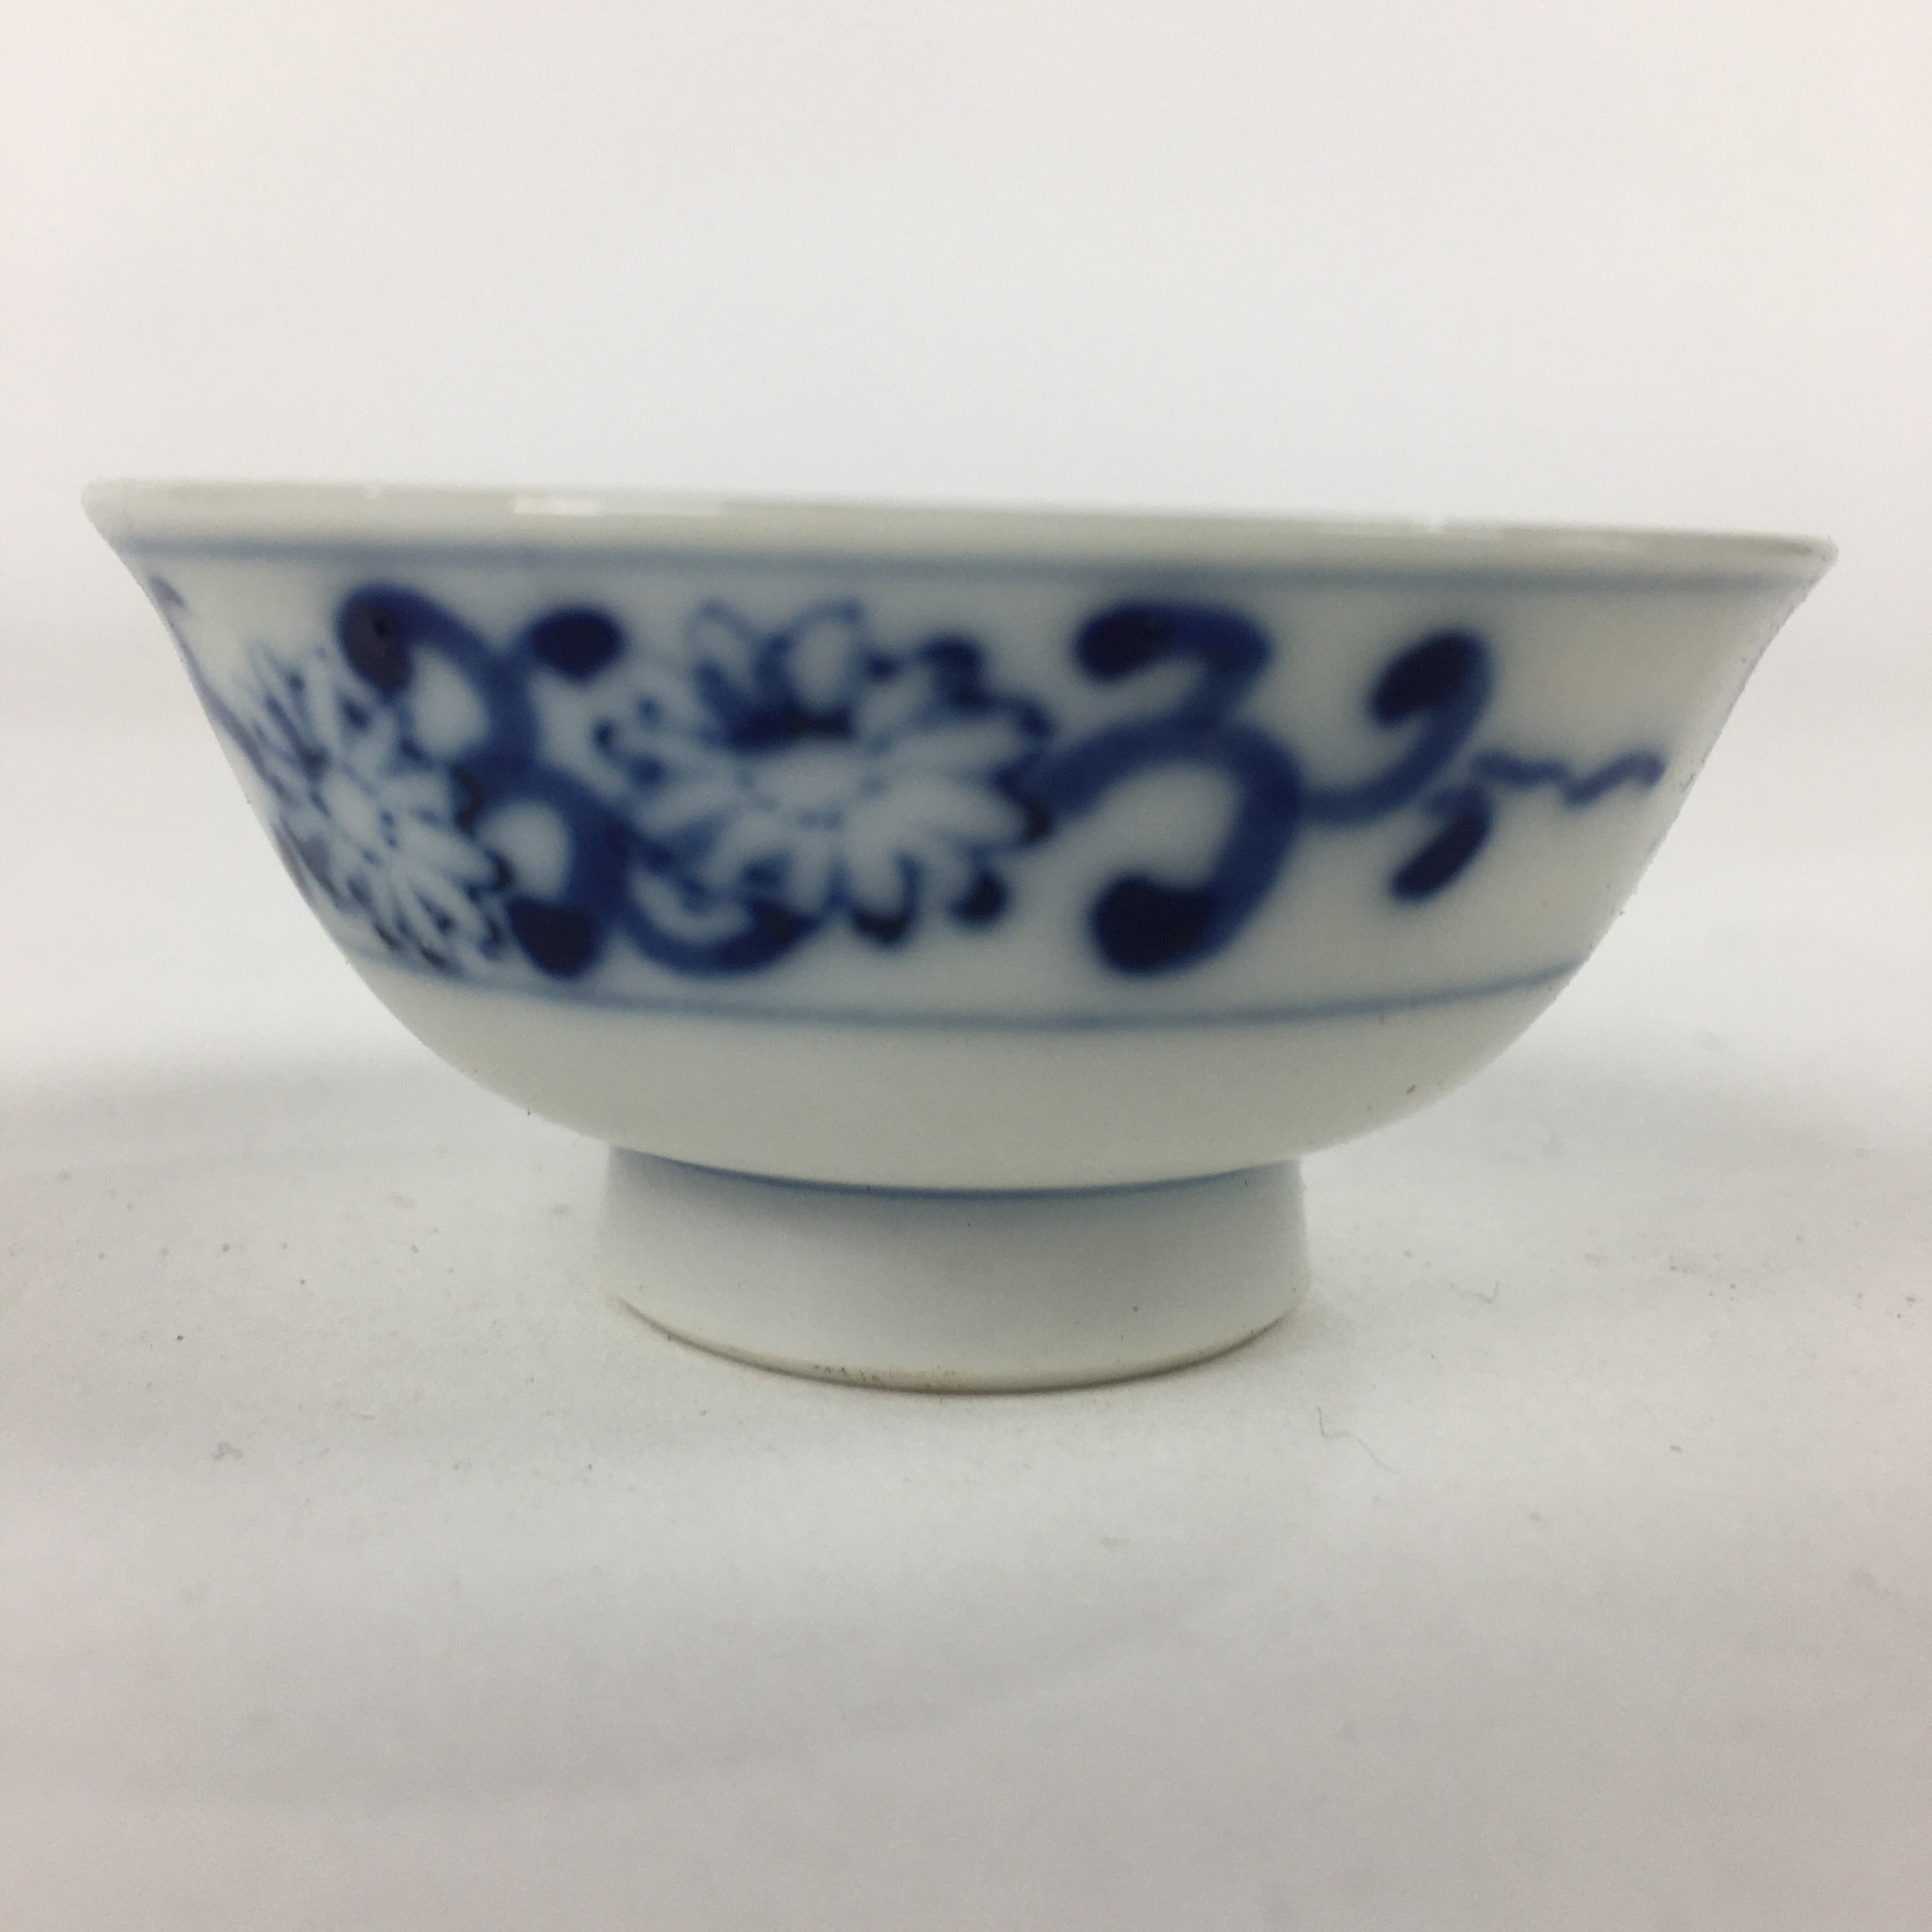 Japanese Porcelain Sake Cup Vtg Blue Sometsuke Design Guinomi Ochoko G17